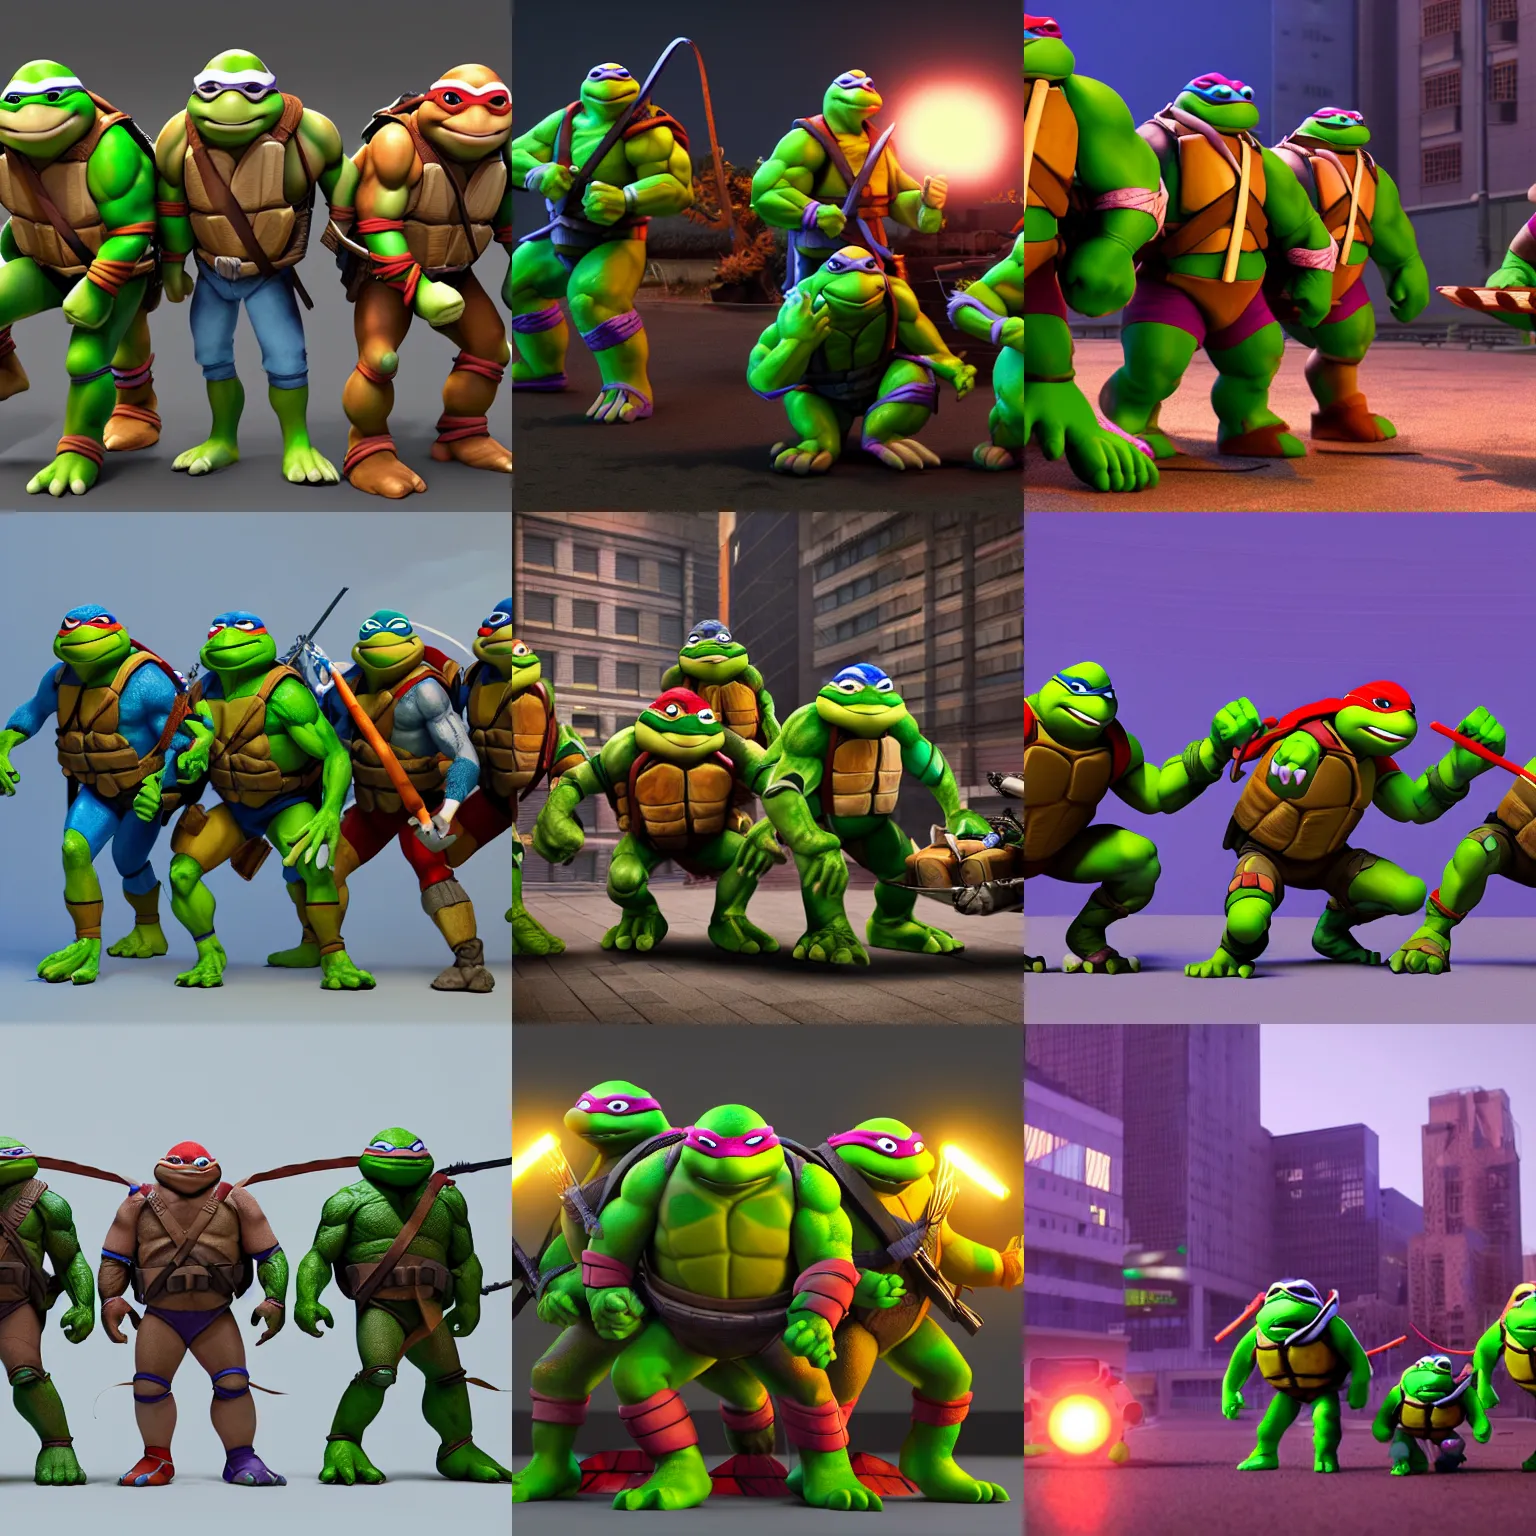 Prompt: teenage mutant ninja turtles in the style of pixar, 3 d render, cinematic lighting, volumetric lighting, octane render